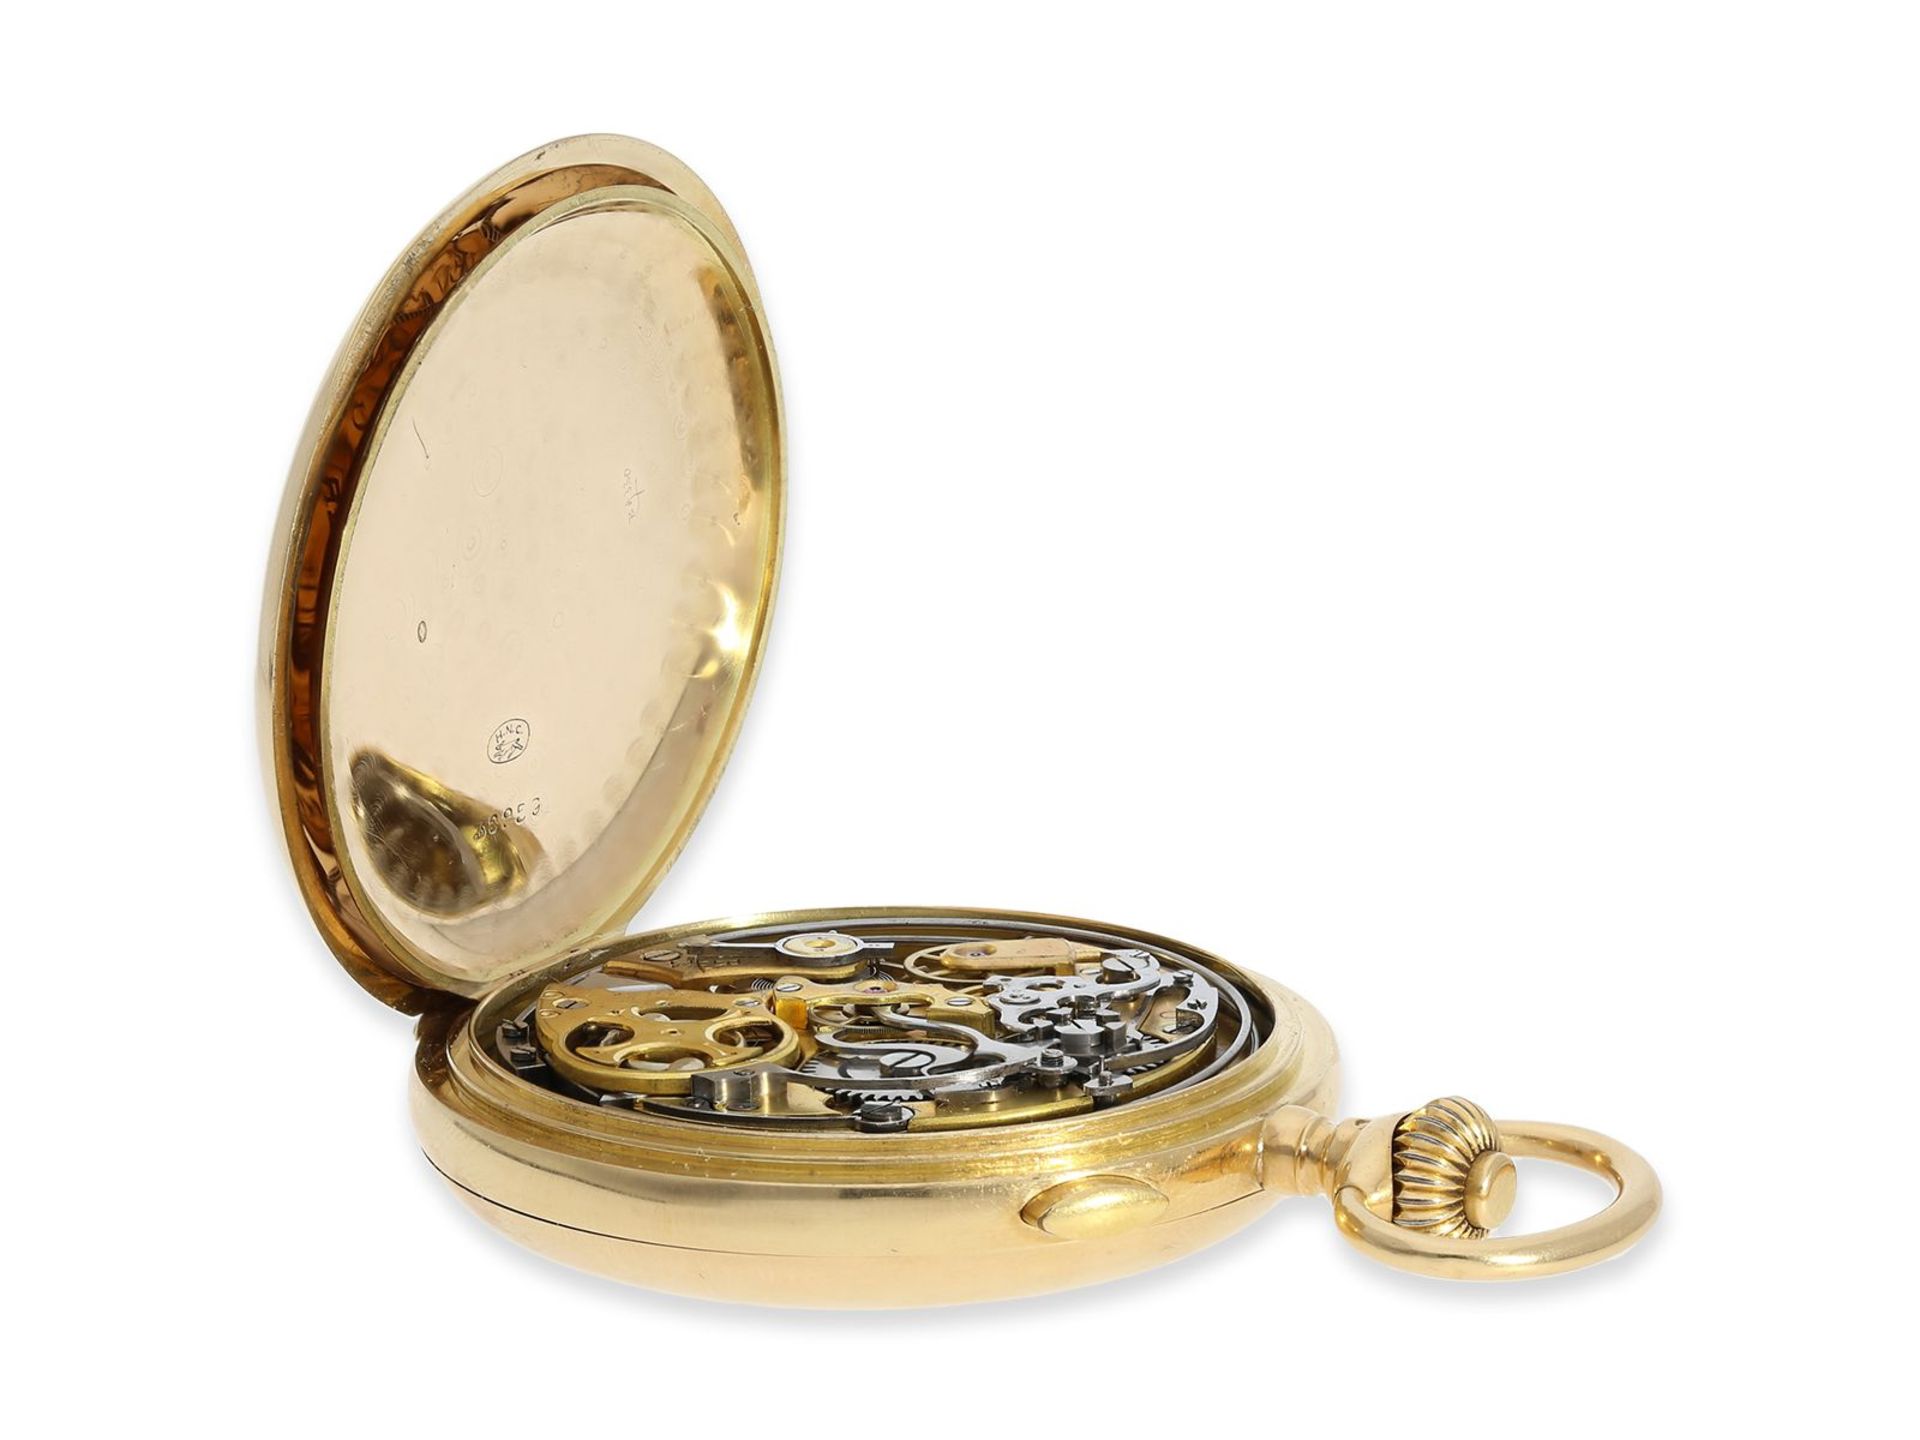 Taschenuhr: schwere rotgoldene Savonnette mit Repetition und Chronograph, 18K Gold, signiert Horloge - Image 9 of 12